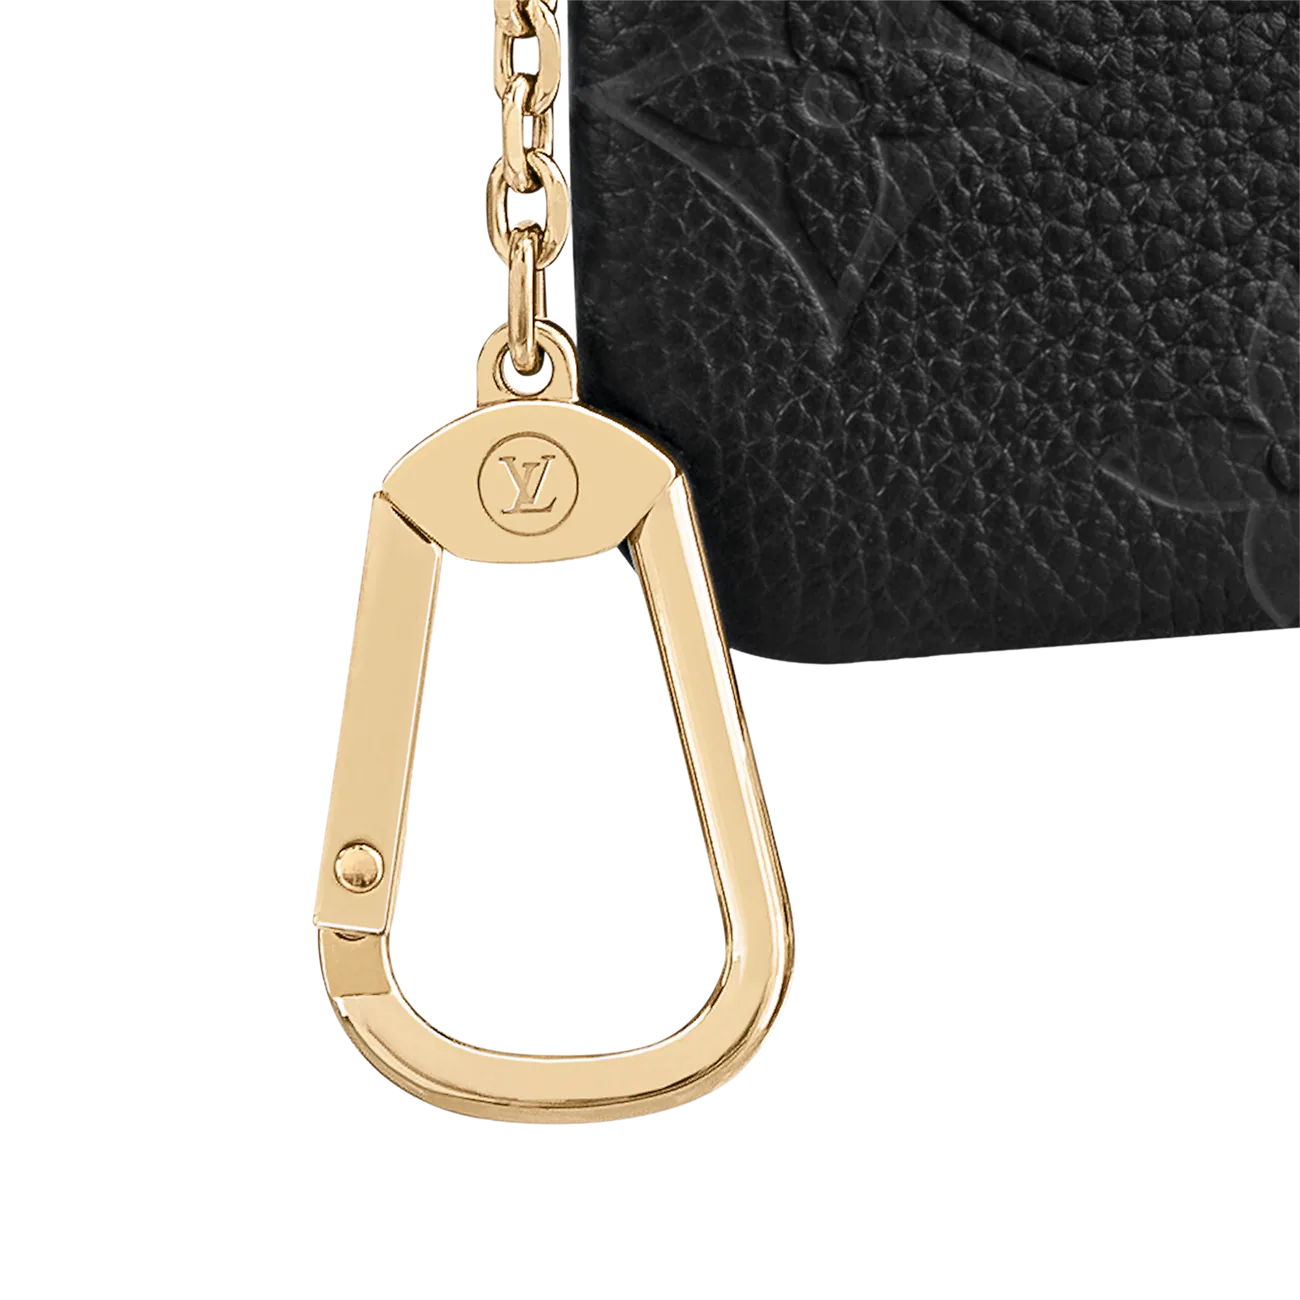 Louis Vuitton Empreinte Key Pouch Black